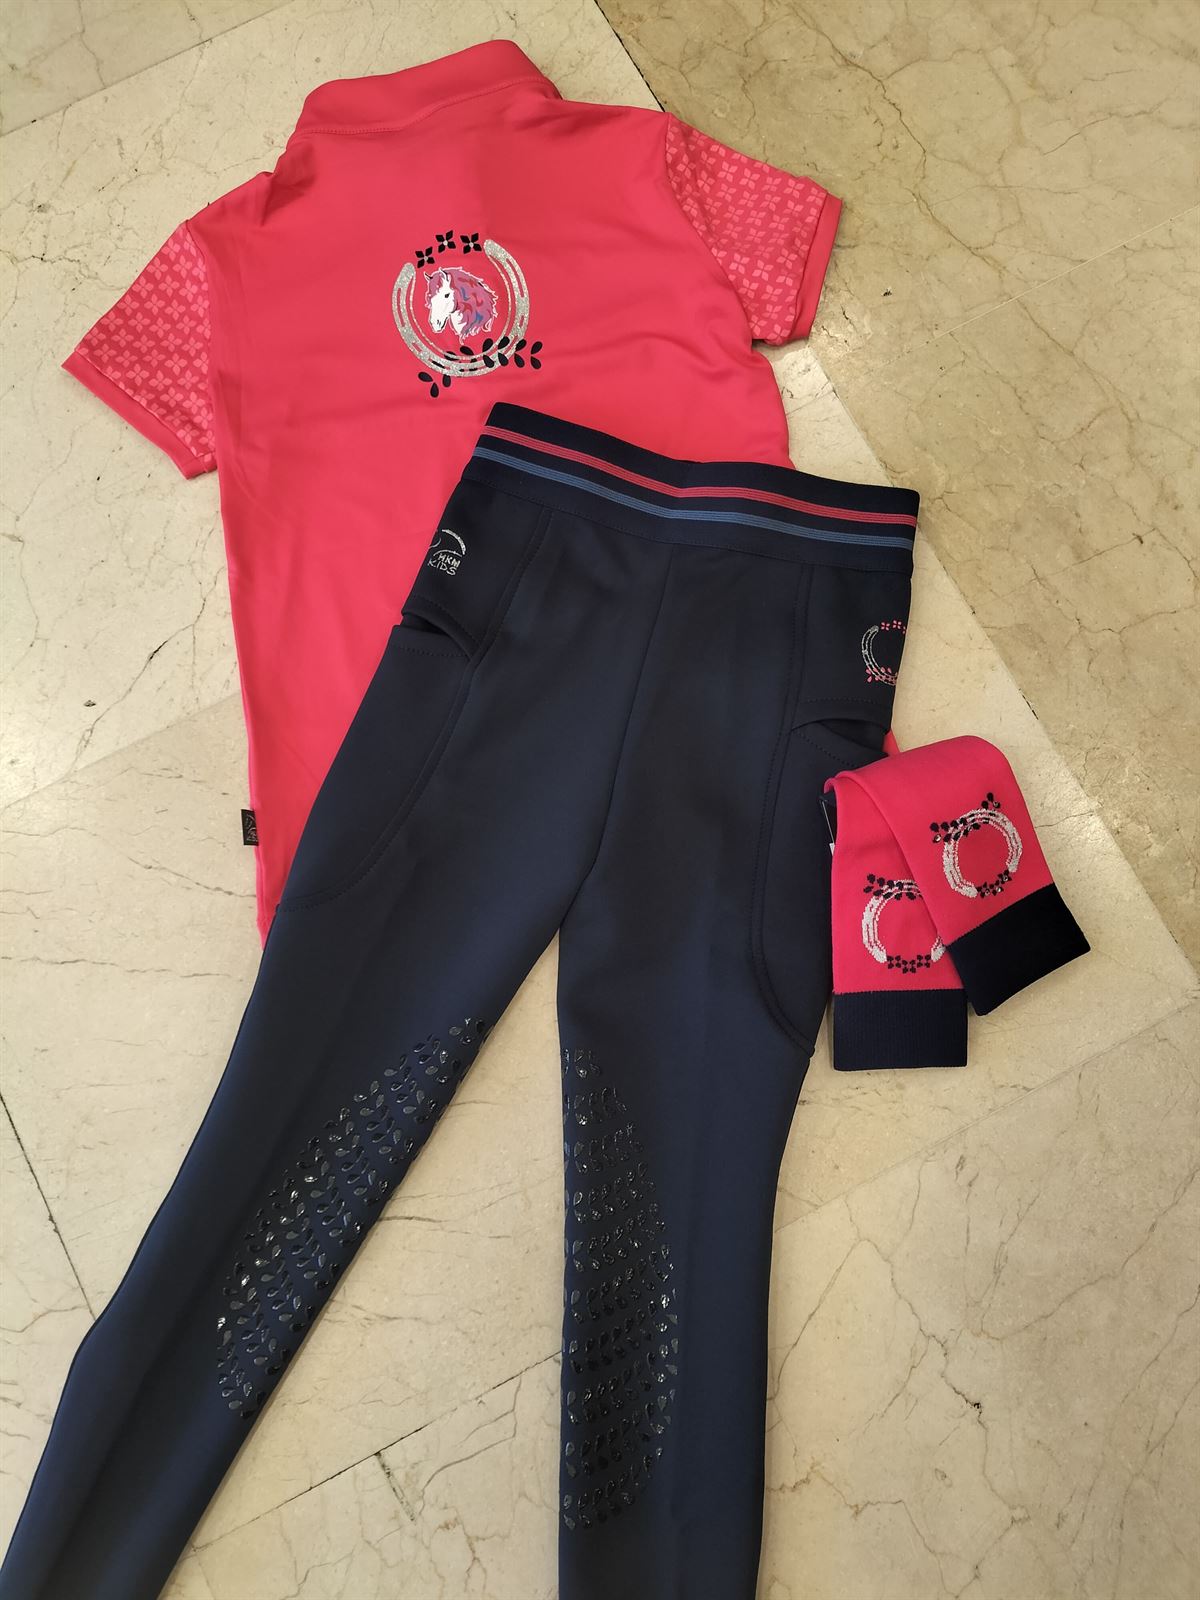 Camiseta técnica HKM Sports Equipment Aymee color rosa TALLA 140 (7-9 años) - Imagen 8